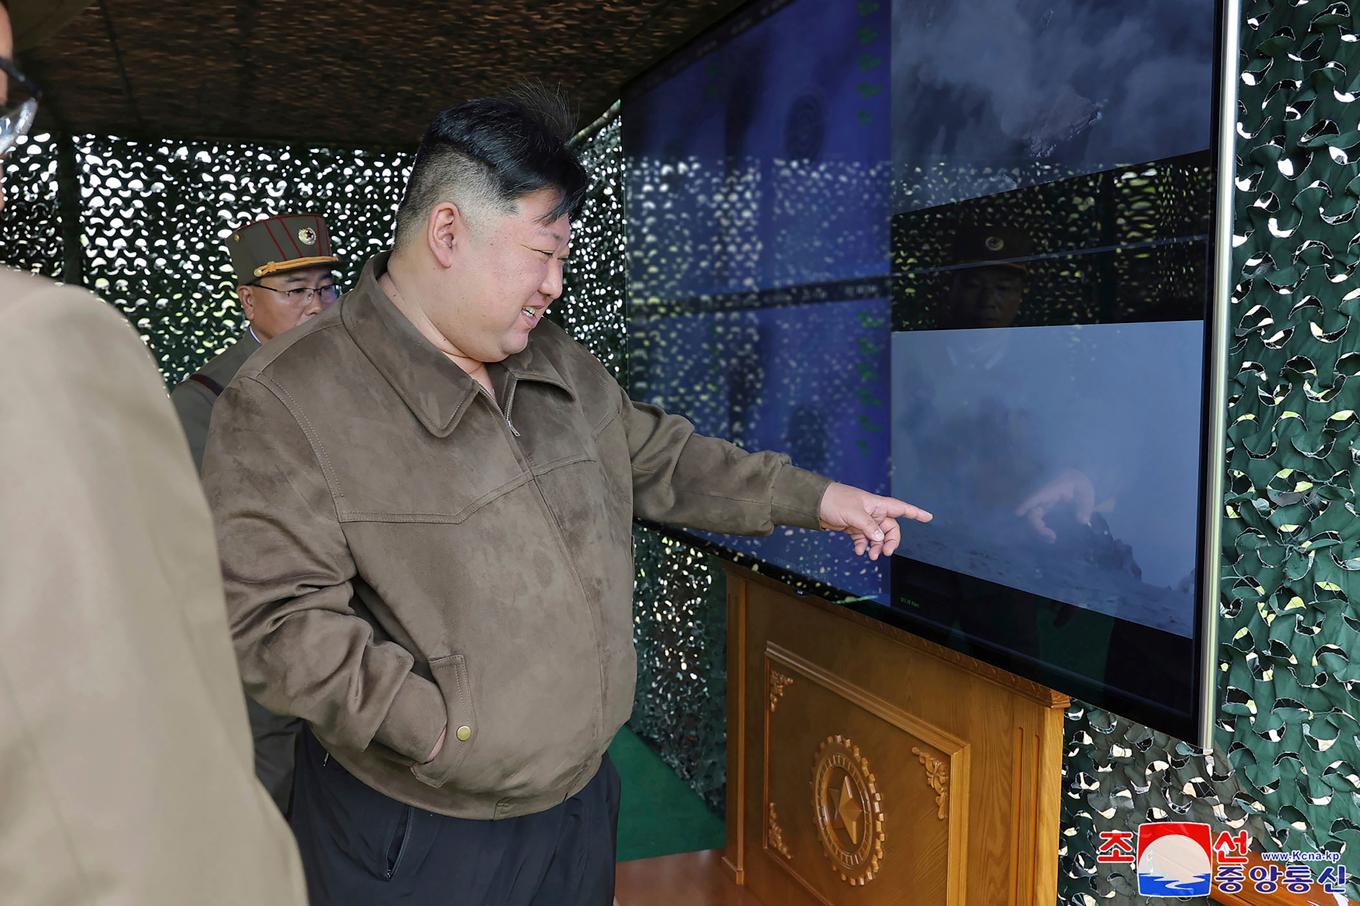 På bilden, som tillhandahållits av den Nordkoreanska regimen, ses ledaren Kim Jong-Un övervaka det som påstås vara en militärövning på en icke angiven plats i Nordkorea. Foto: Korean Central News Agency/Korea News Service via AP/TT